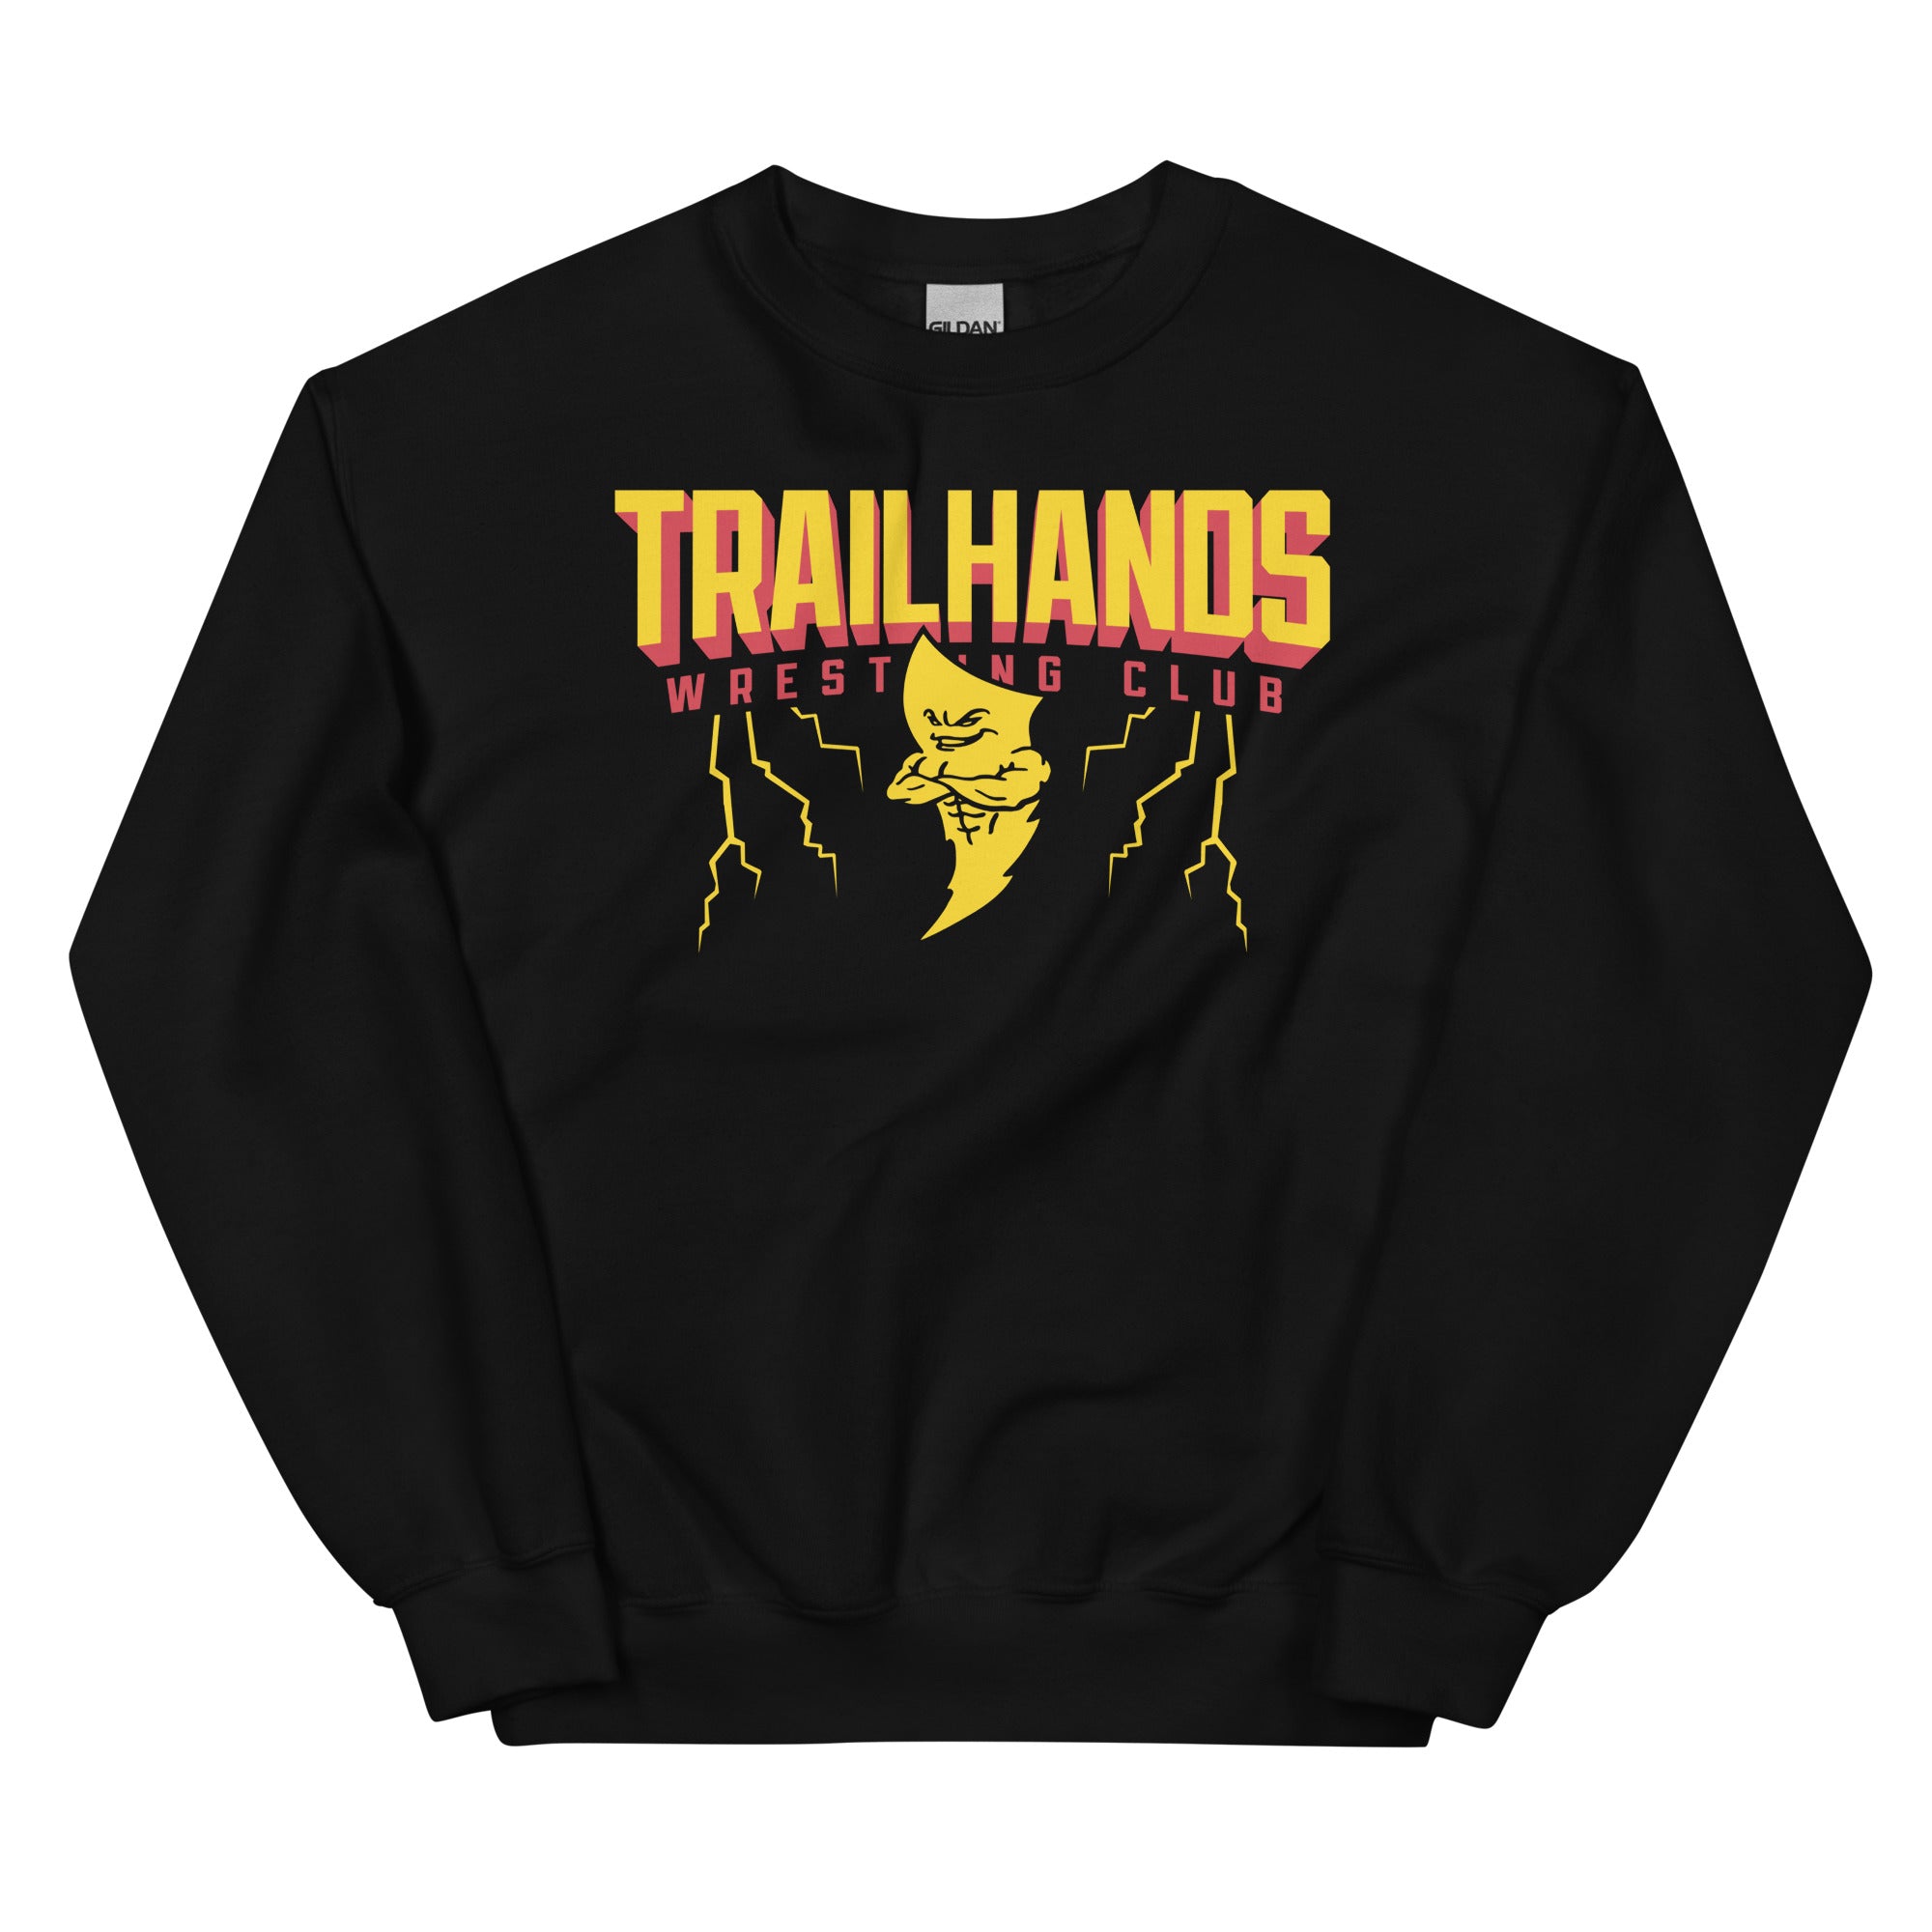 Trailhands Wrestling Club Unisex Sweatshirt